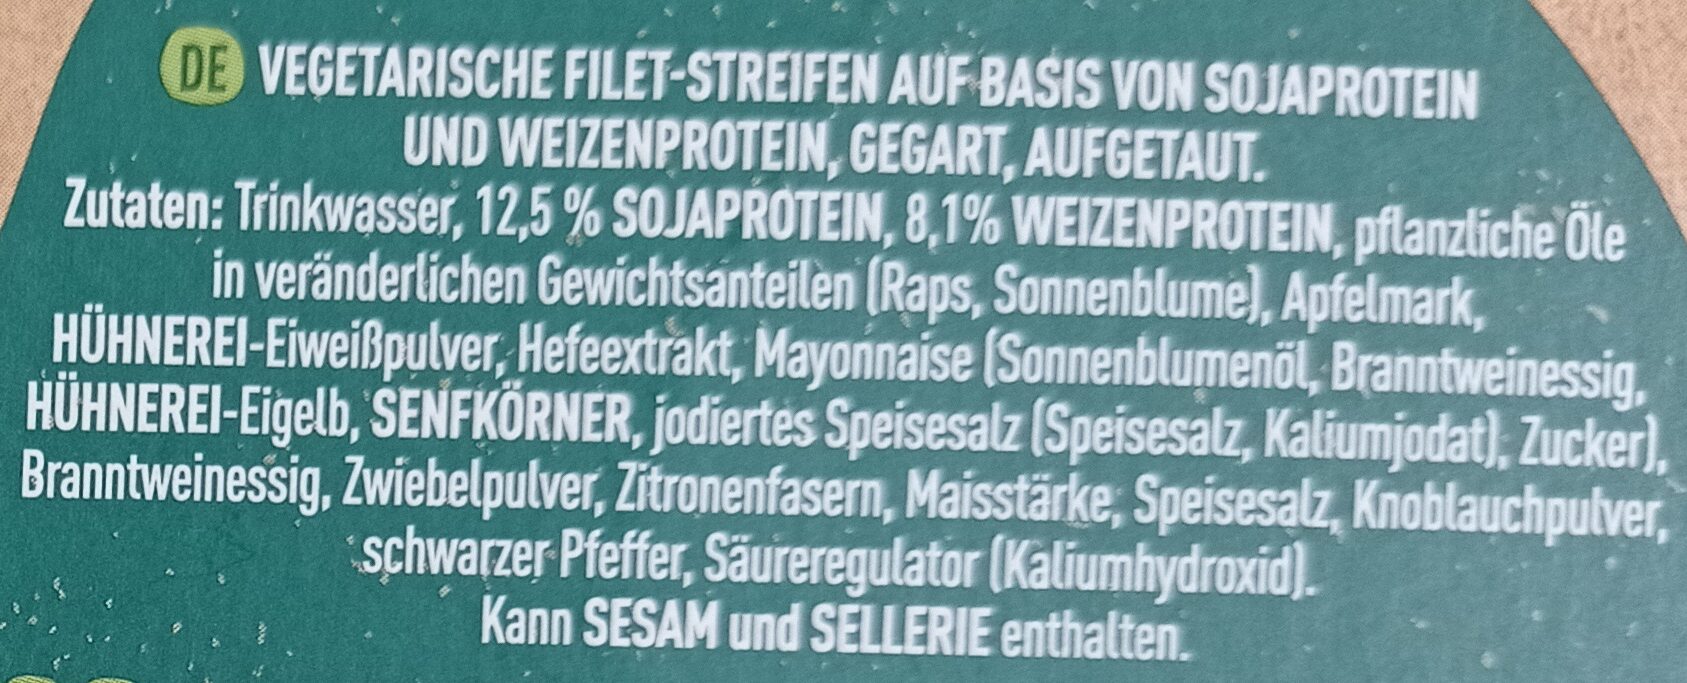 Vegetarische Filetsteifen - Ingredients - de